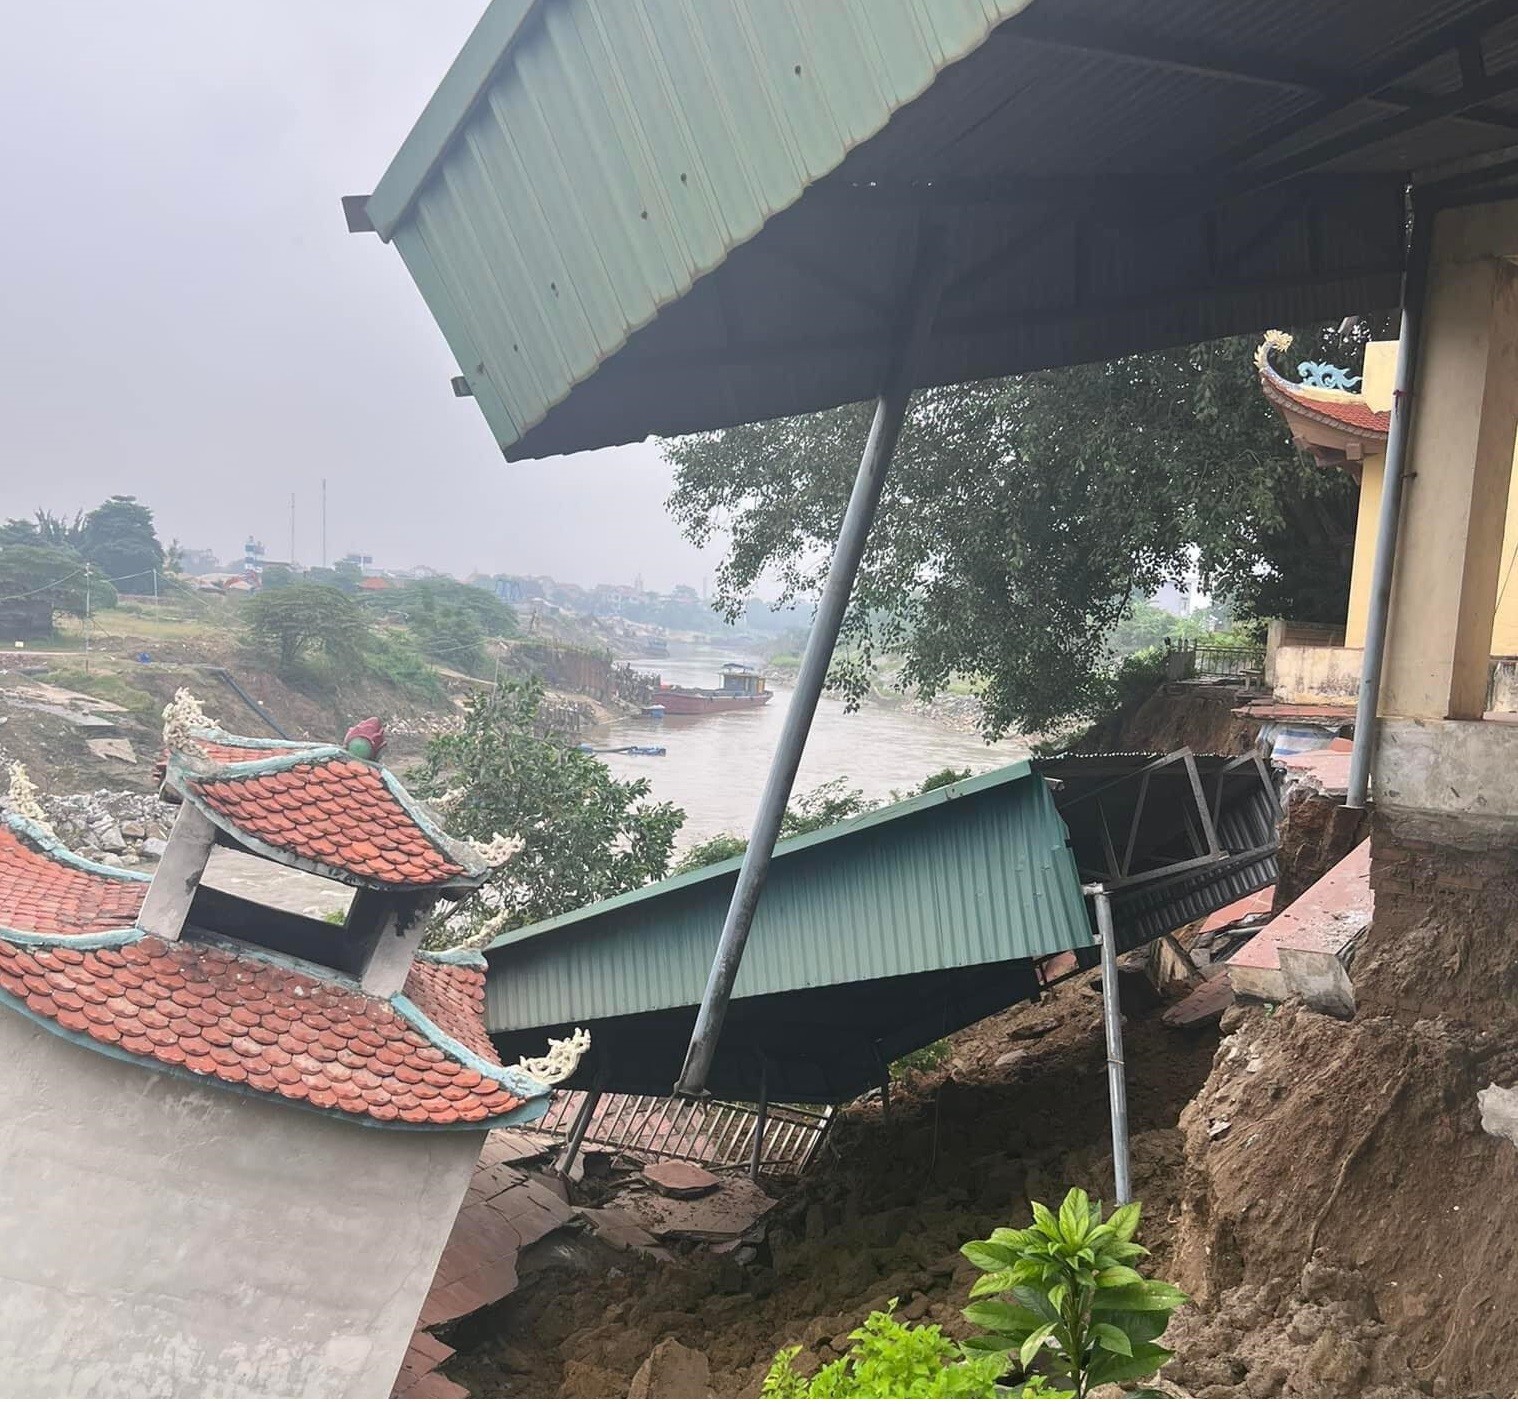 Hình ảnh đền Mẫu thôn Phú Hậu, xã Sơn Đông bị sạt lở, có nguy cơ đổ sụp xuống sông Phó Đáy hồi tháng 10.2022. Ảnh: Người dân cung cấp